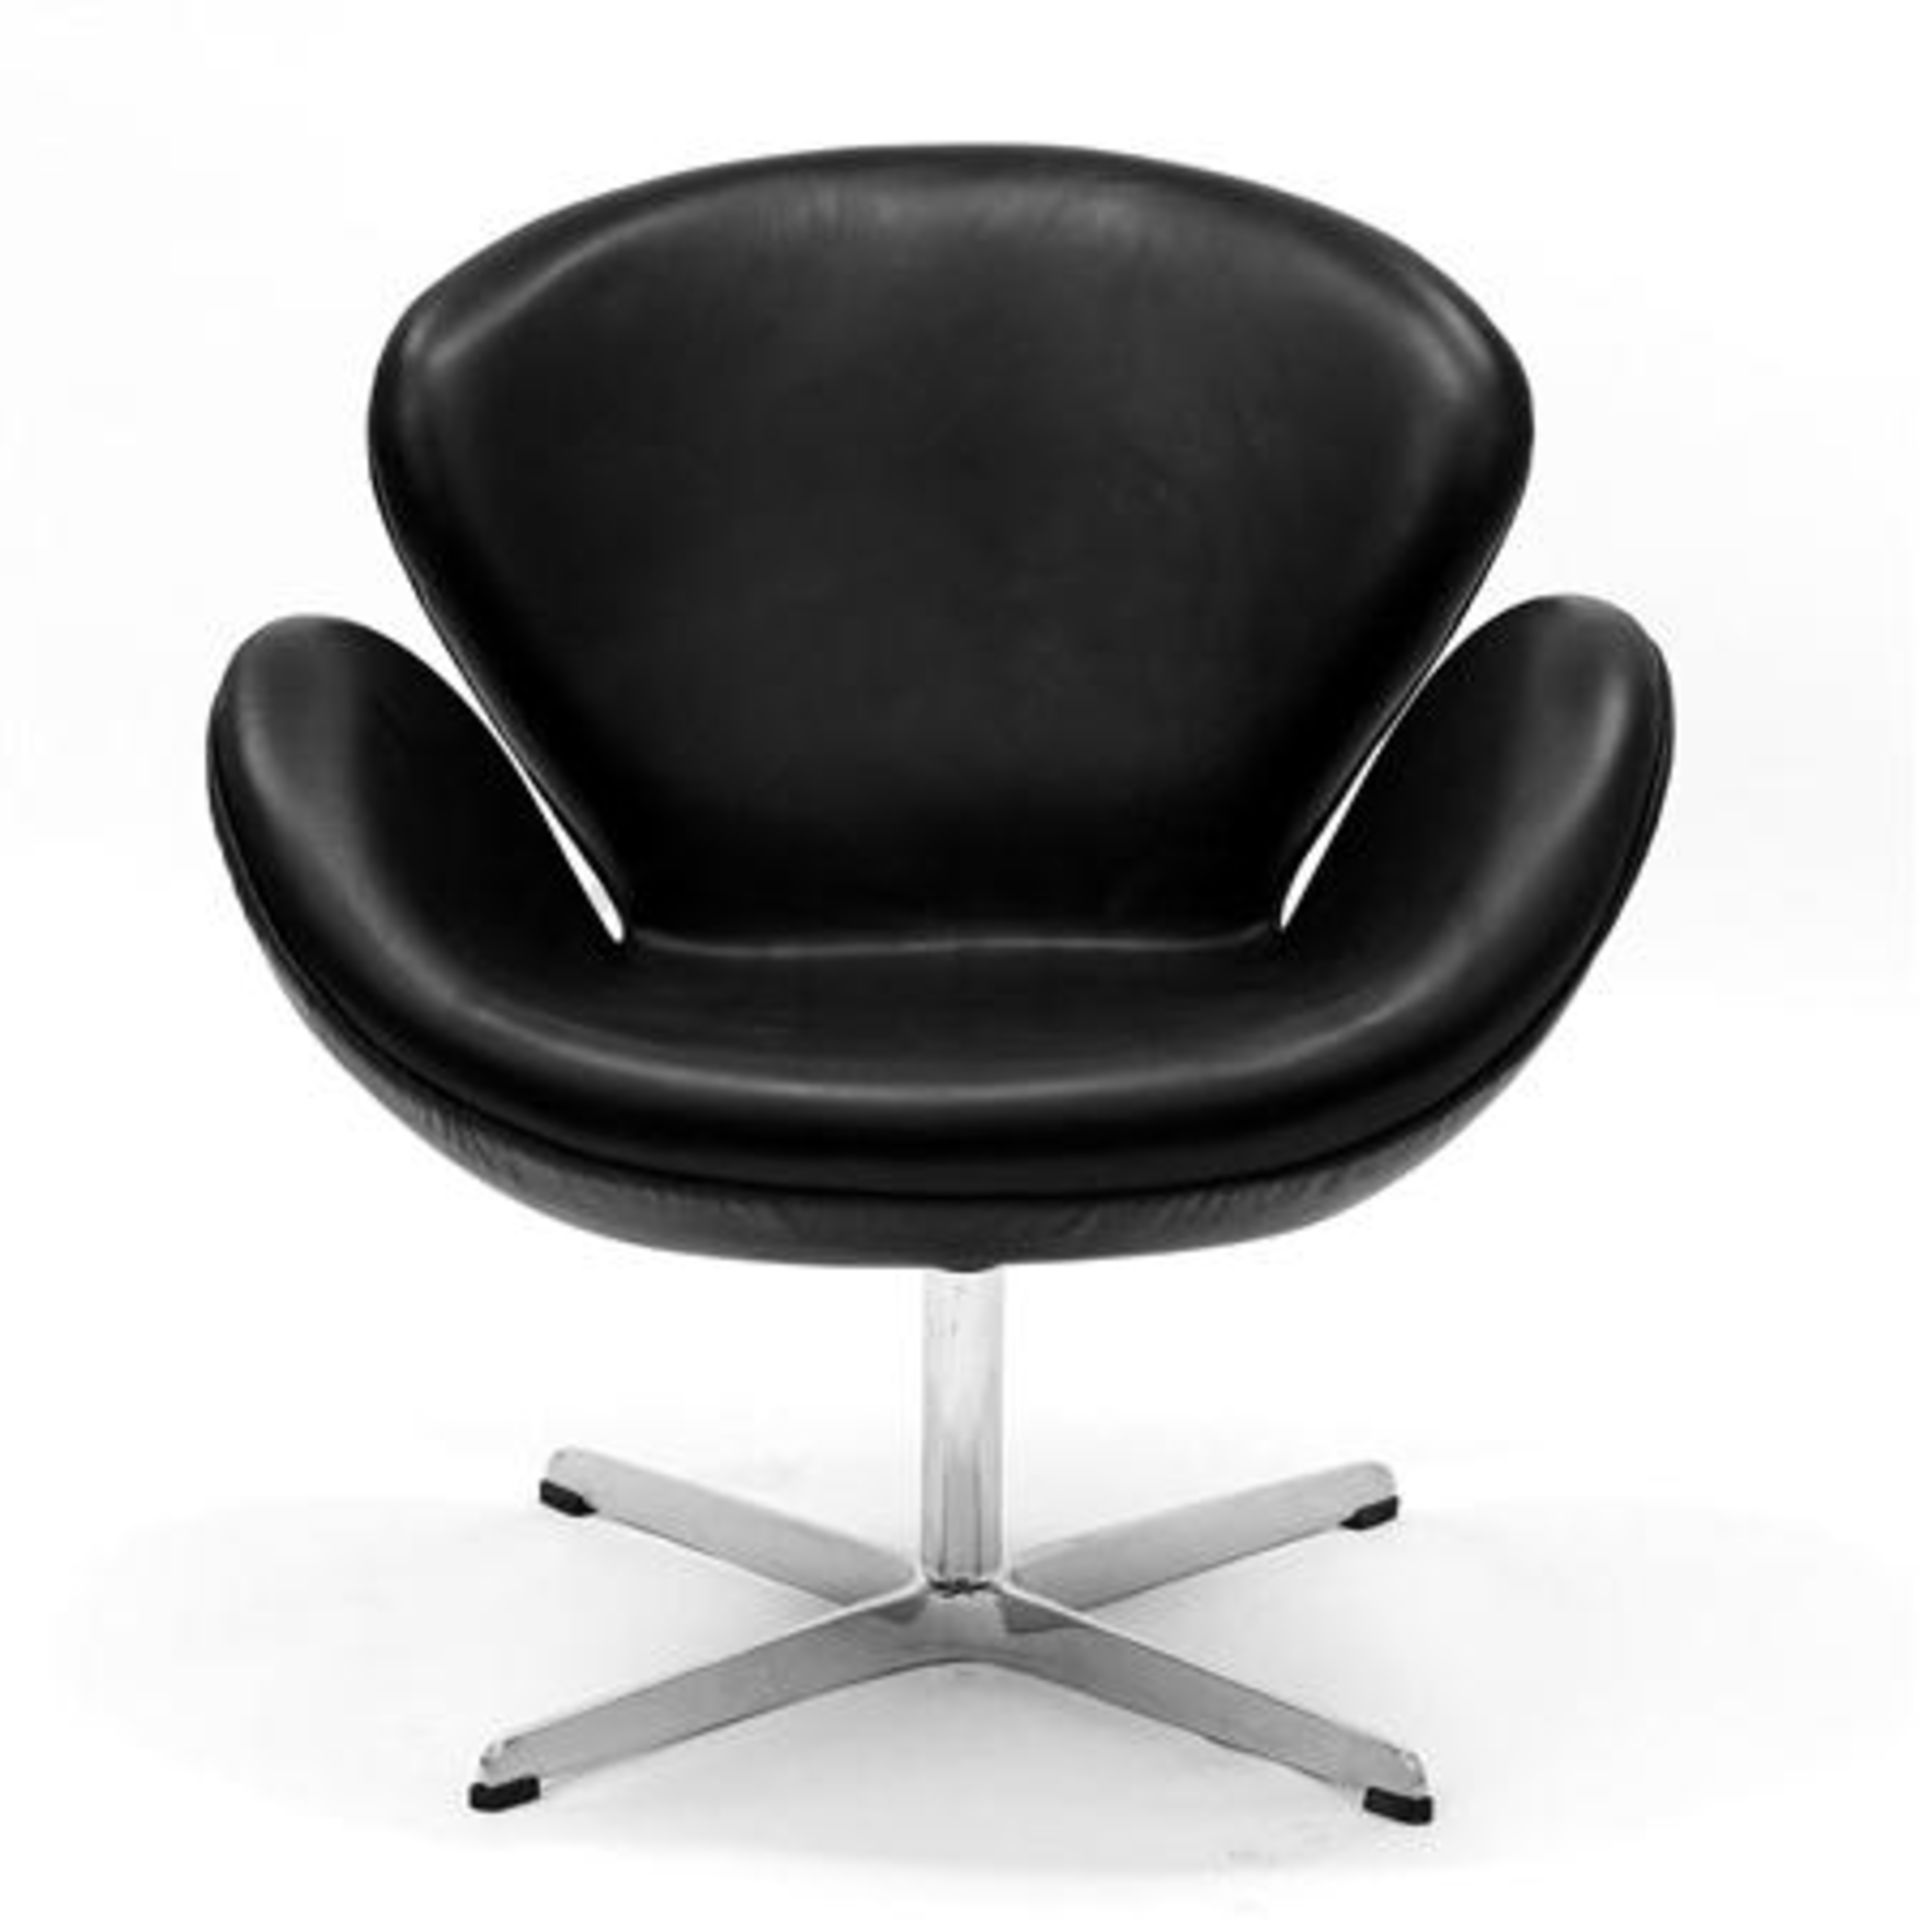 Swan Chair black - Image 2 of 2